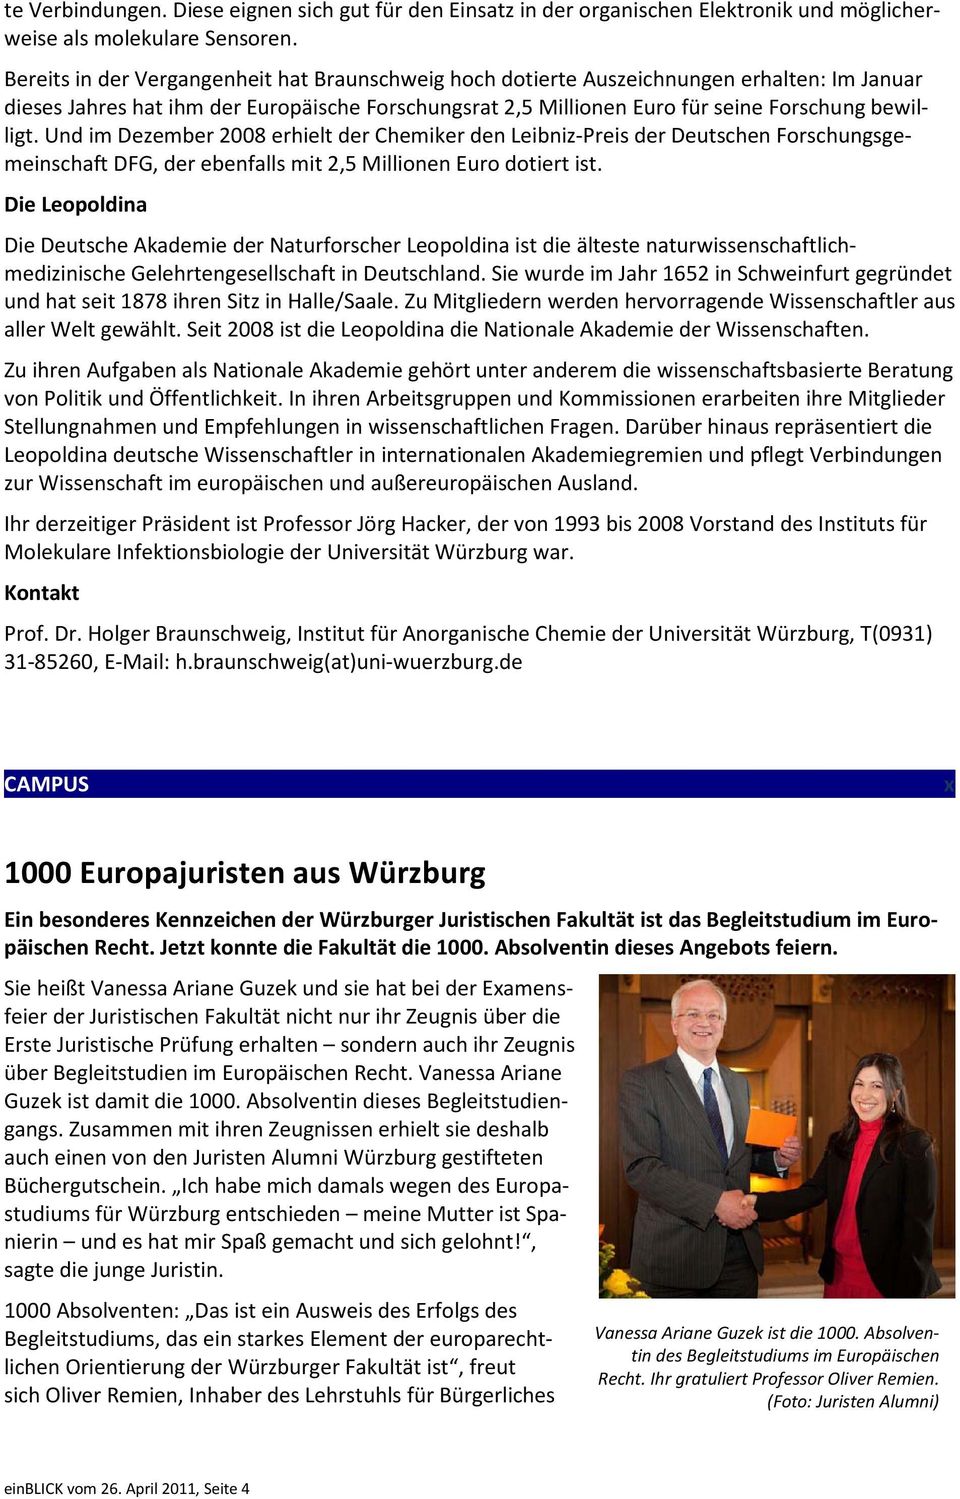 Und im Dezember 2008 erhielt der Chemiker den Leibniz-Preis der Deutschen Forschungsgemeinschaft DFG, der ebenfalls mit 2,5 Millionen Euro dotiert ist.